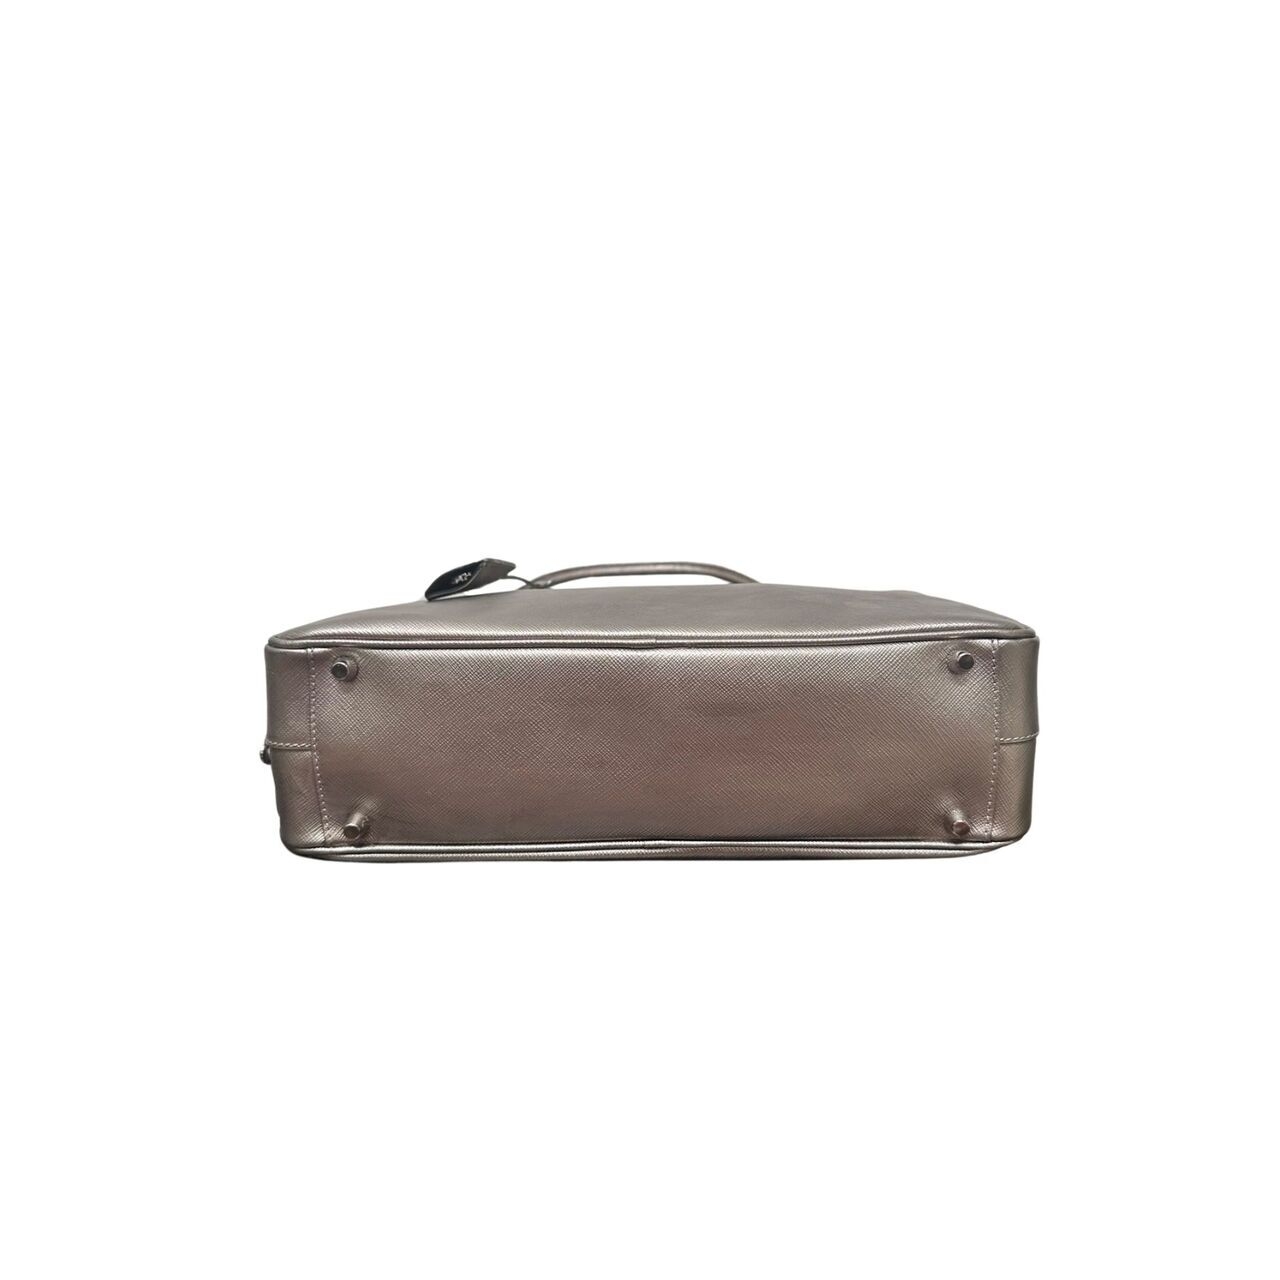 Prada Saffiano Lux Leather Silver Tote Bag